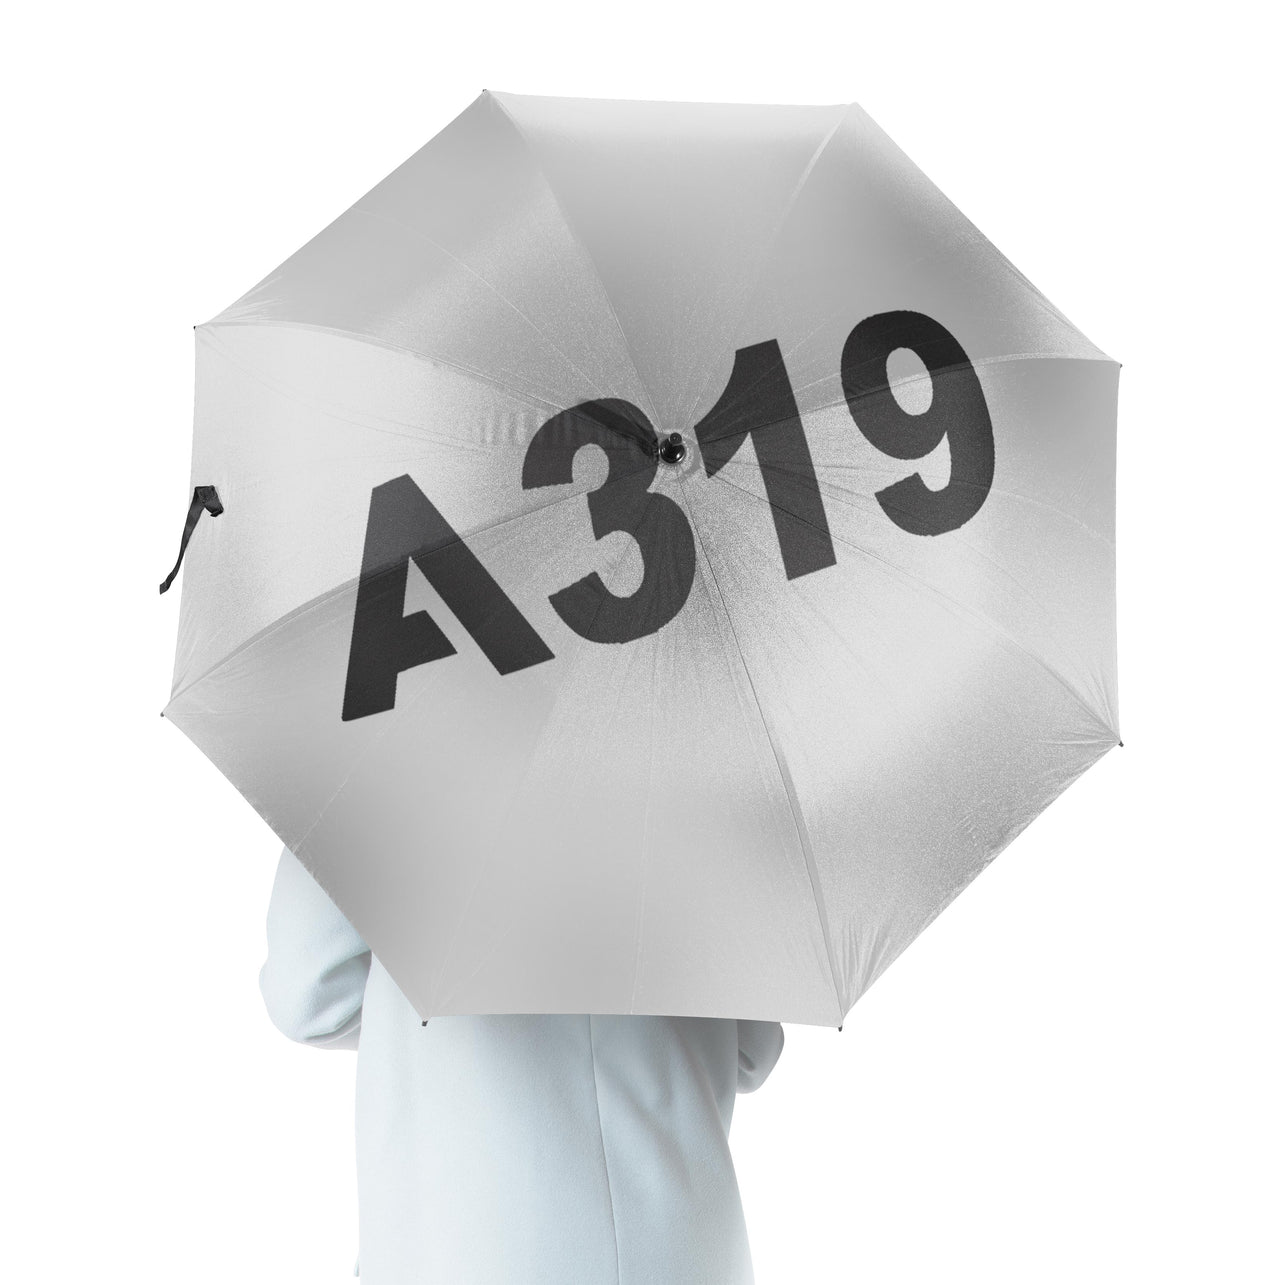 A319 Flat Text Designed Umbrella